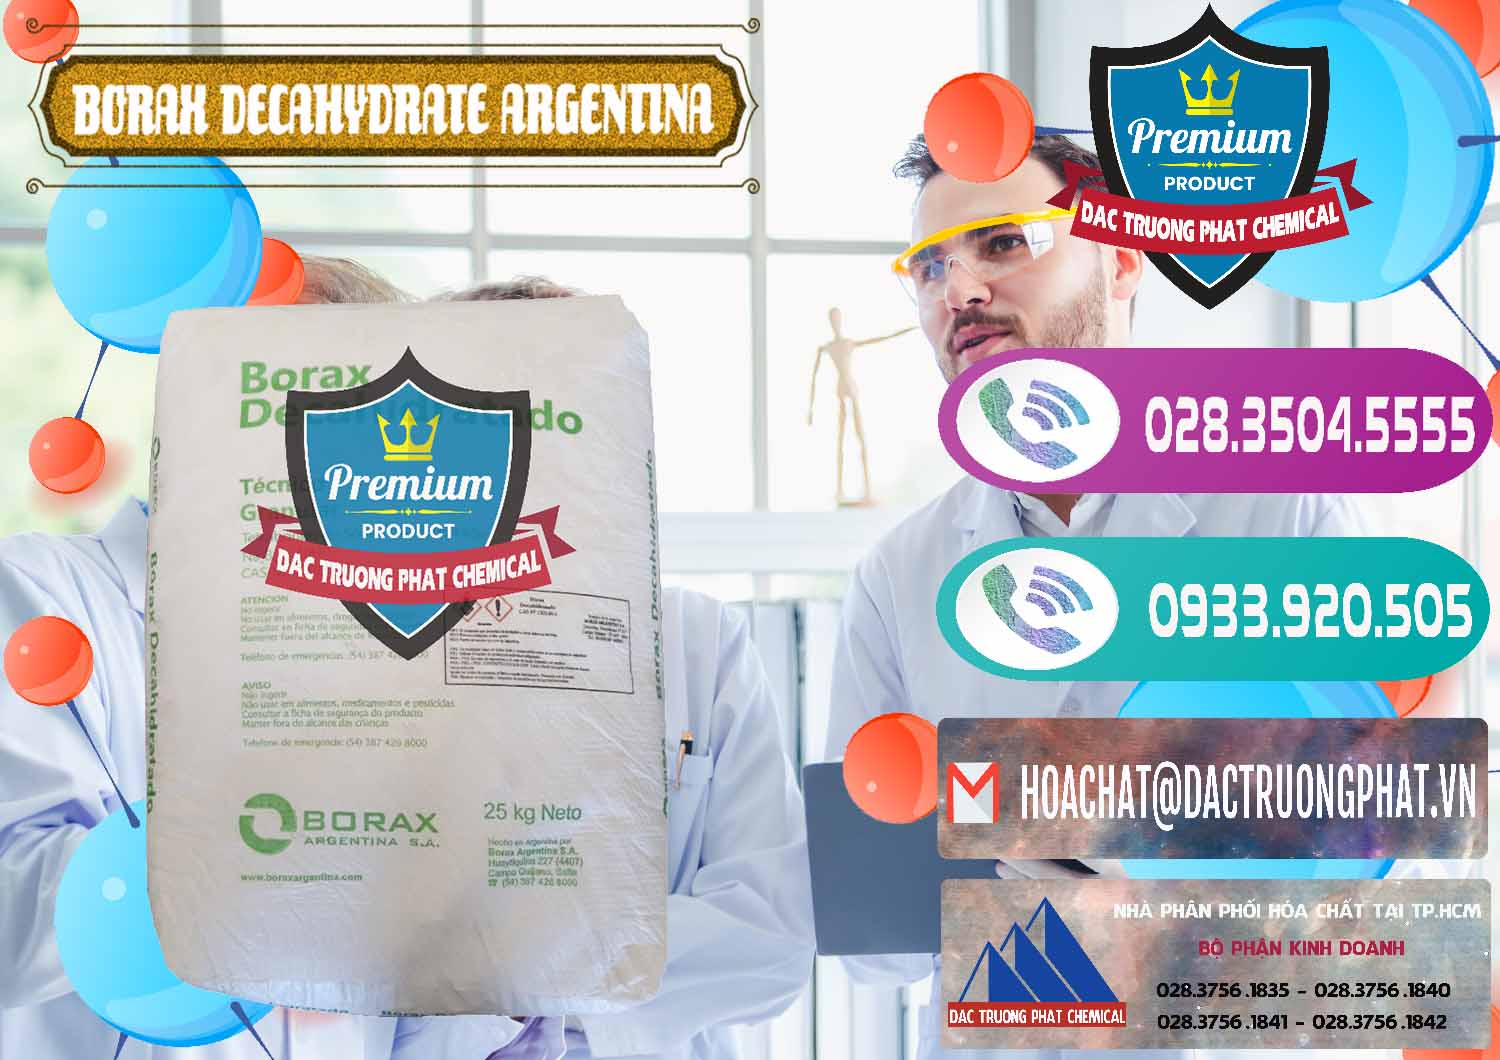 Nơi chuyên bán - phân phối Borax Decahydrate Argentina - 0446 - Cty nhập khẩu và phân phối hóa chất tại TP.HCM - hoachatxulynuoc.com